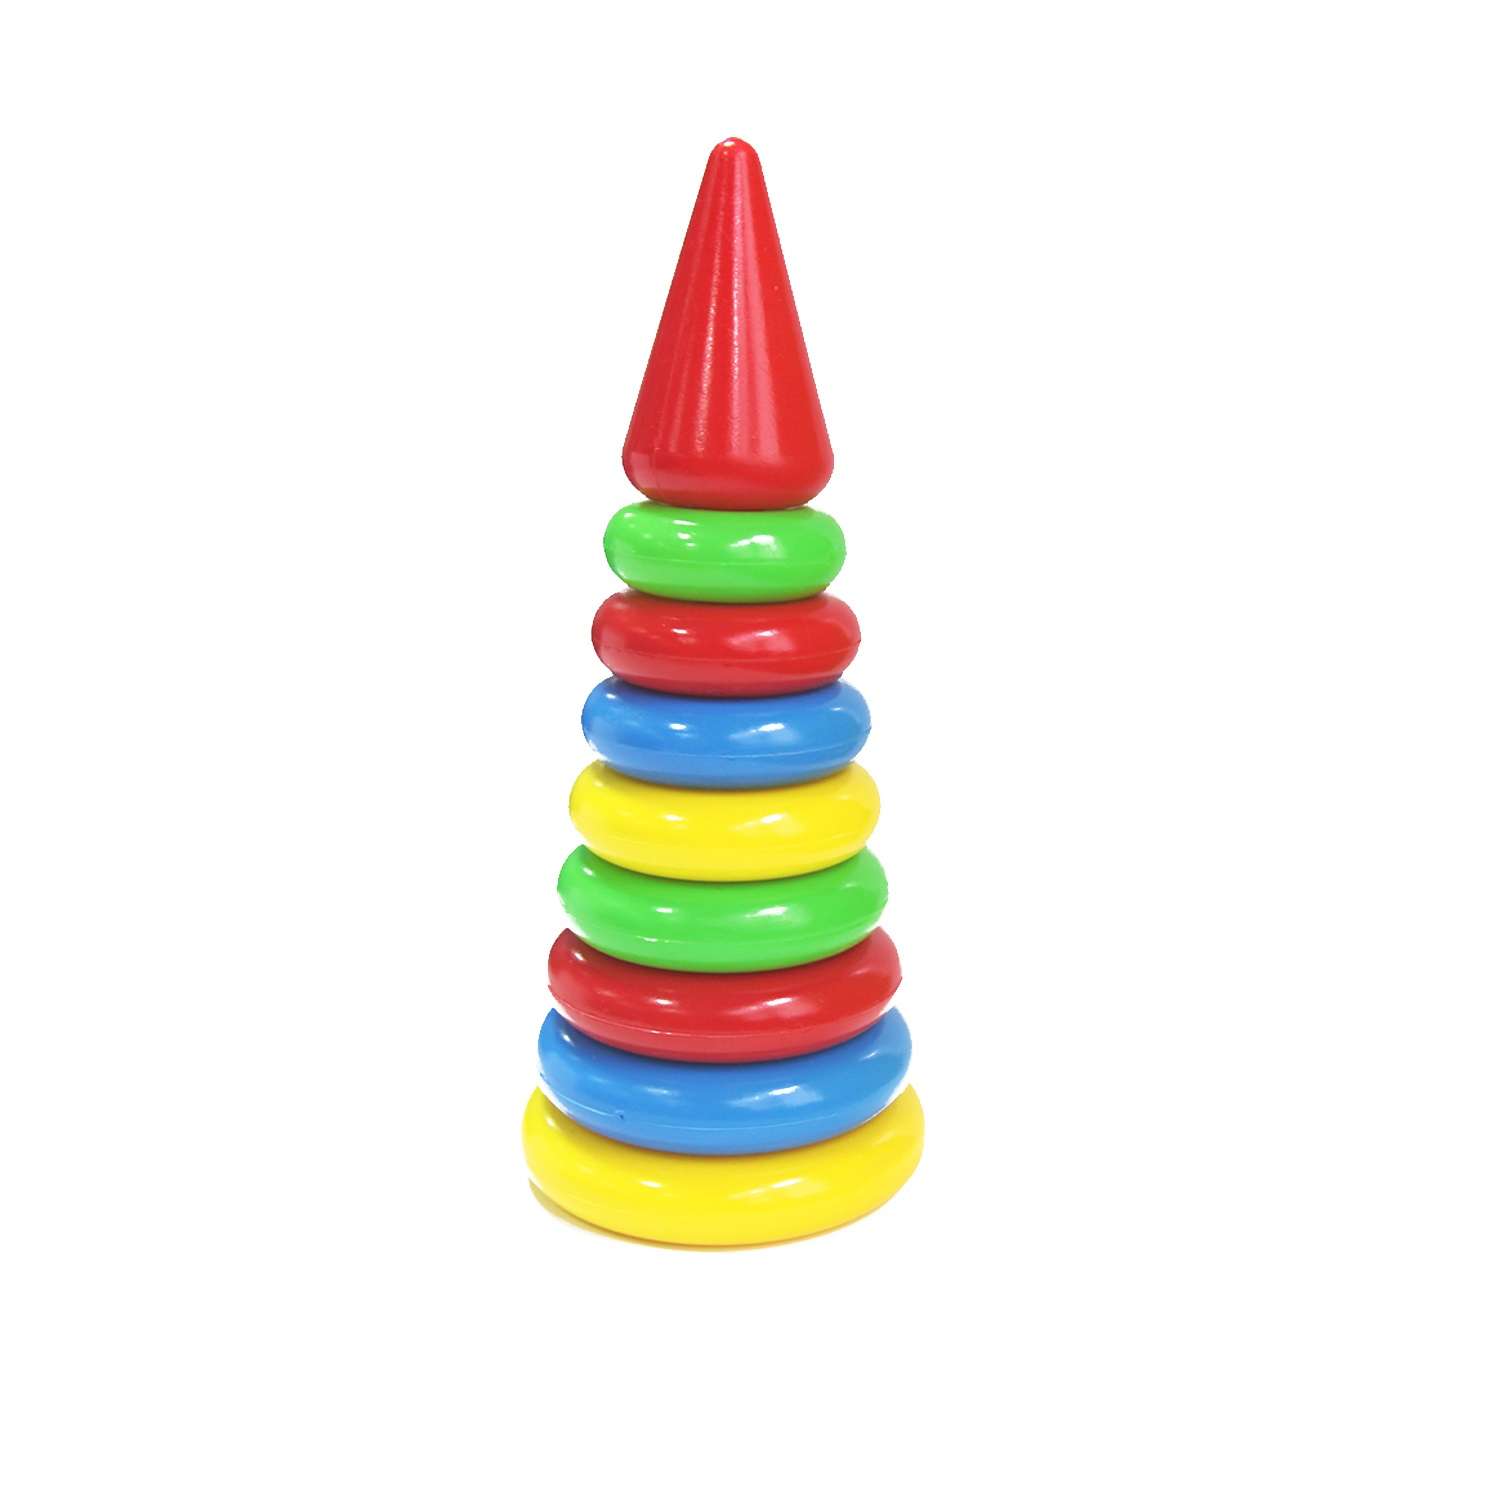 Пирамидка детская развивающая Green Plast 8 колец с наконечником обучающая игрушка - фото 2